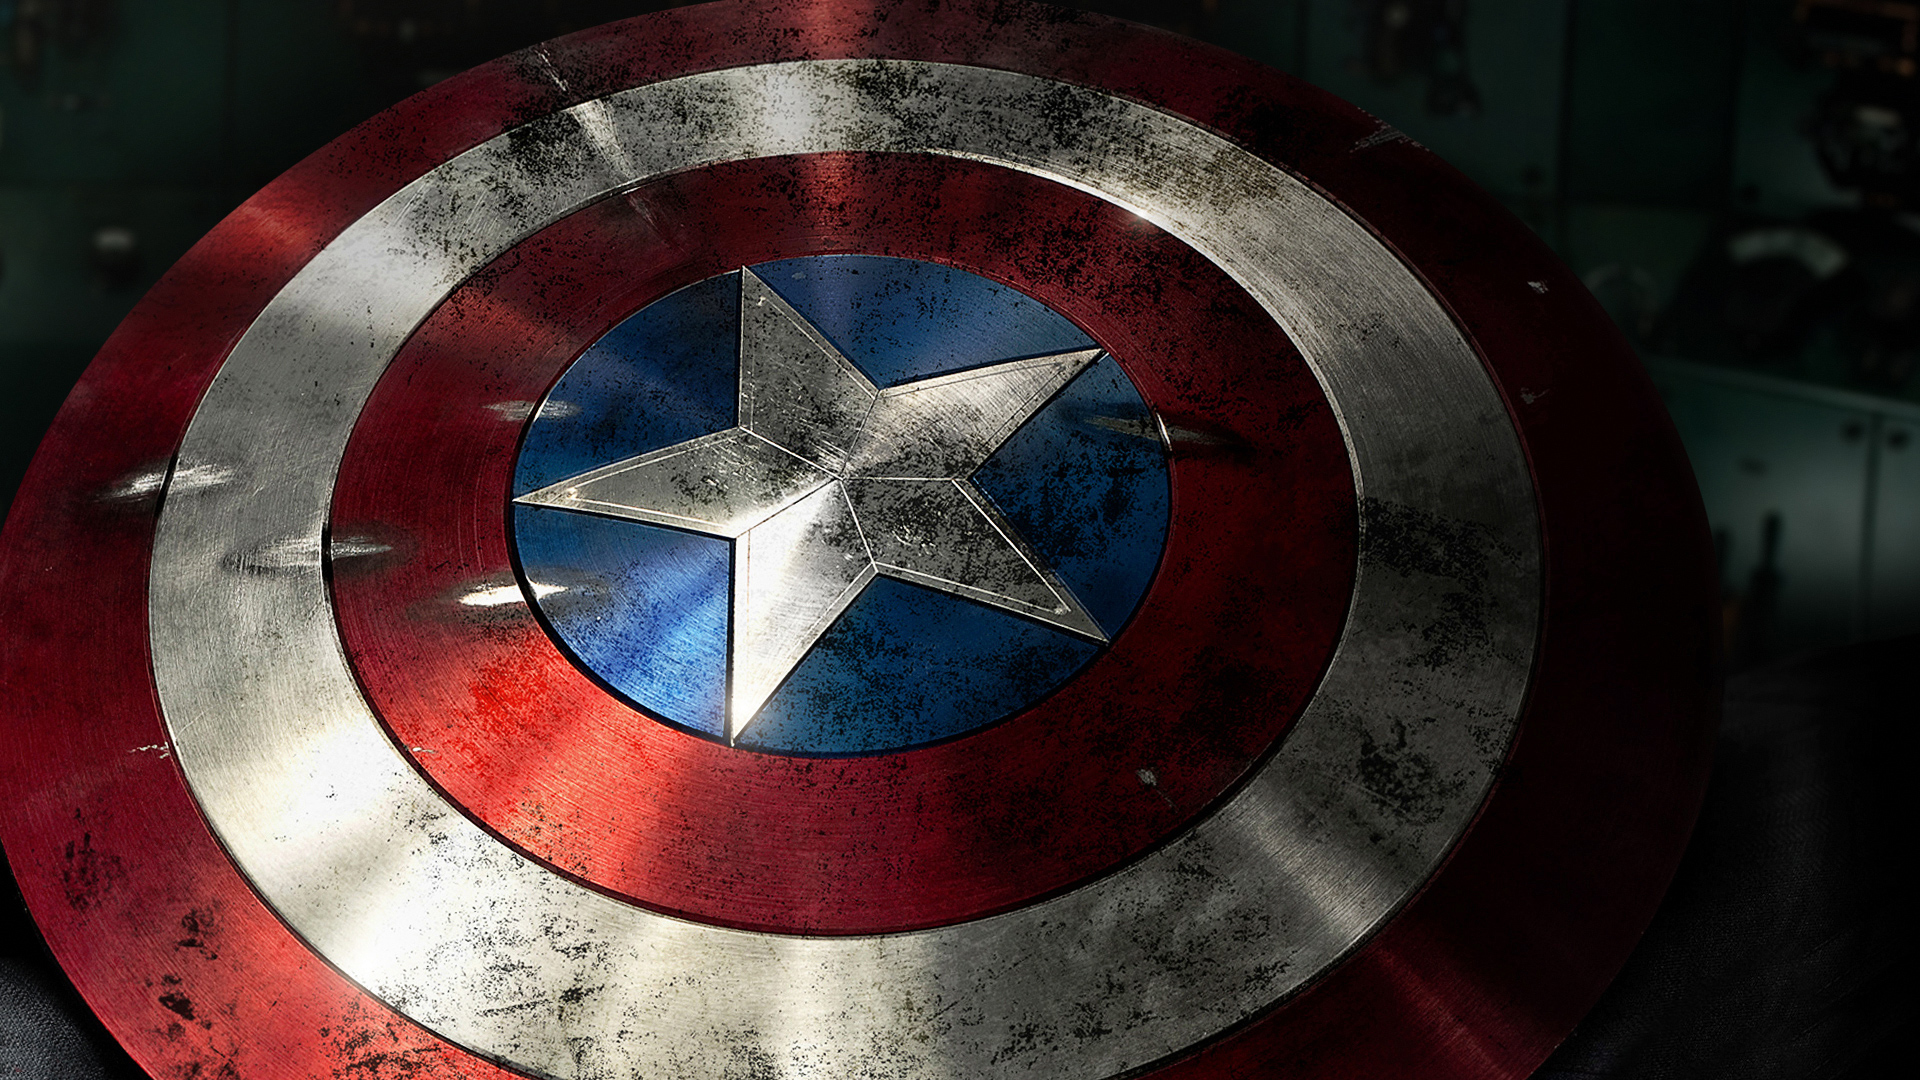 47+] Captain America Shield Wallpaper HD - WallpaperSafari